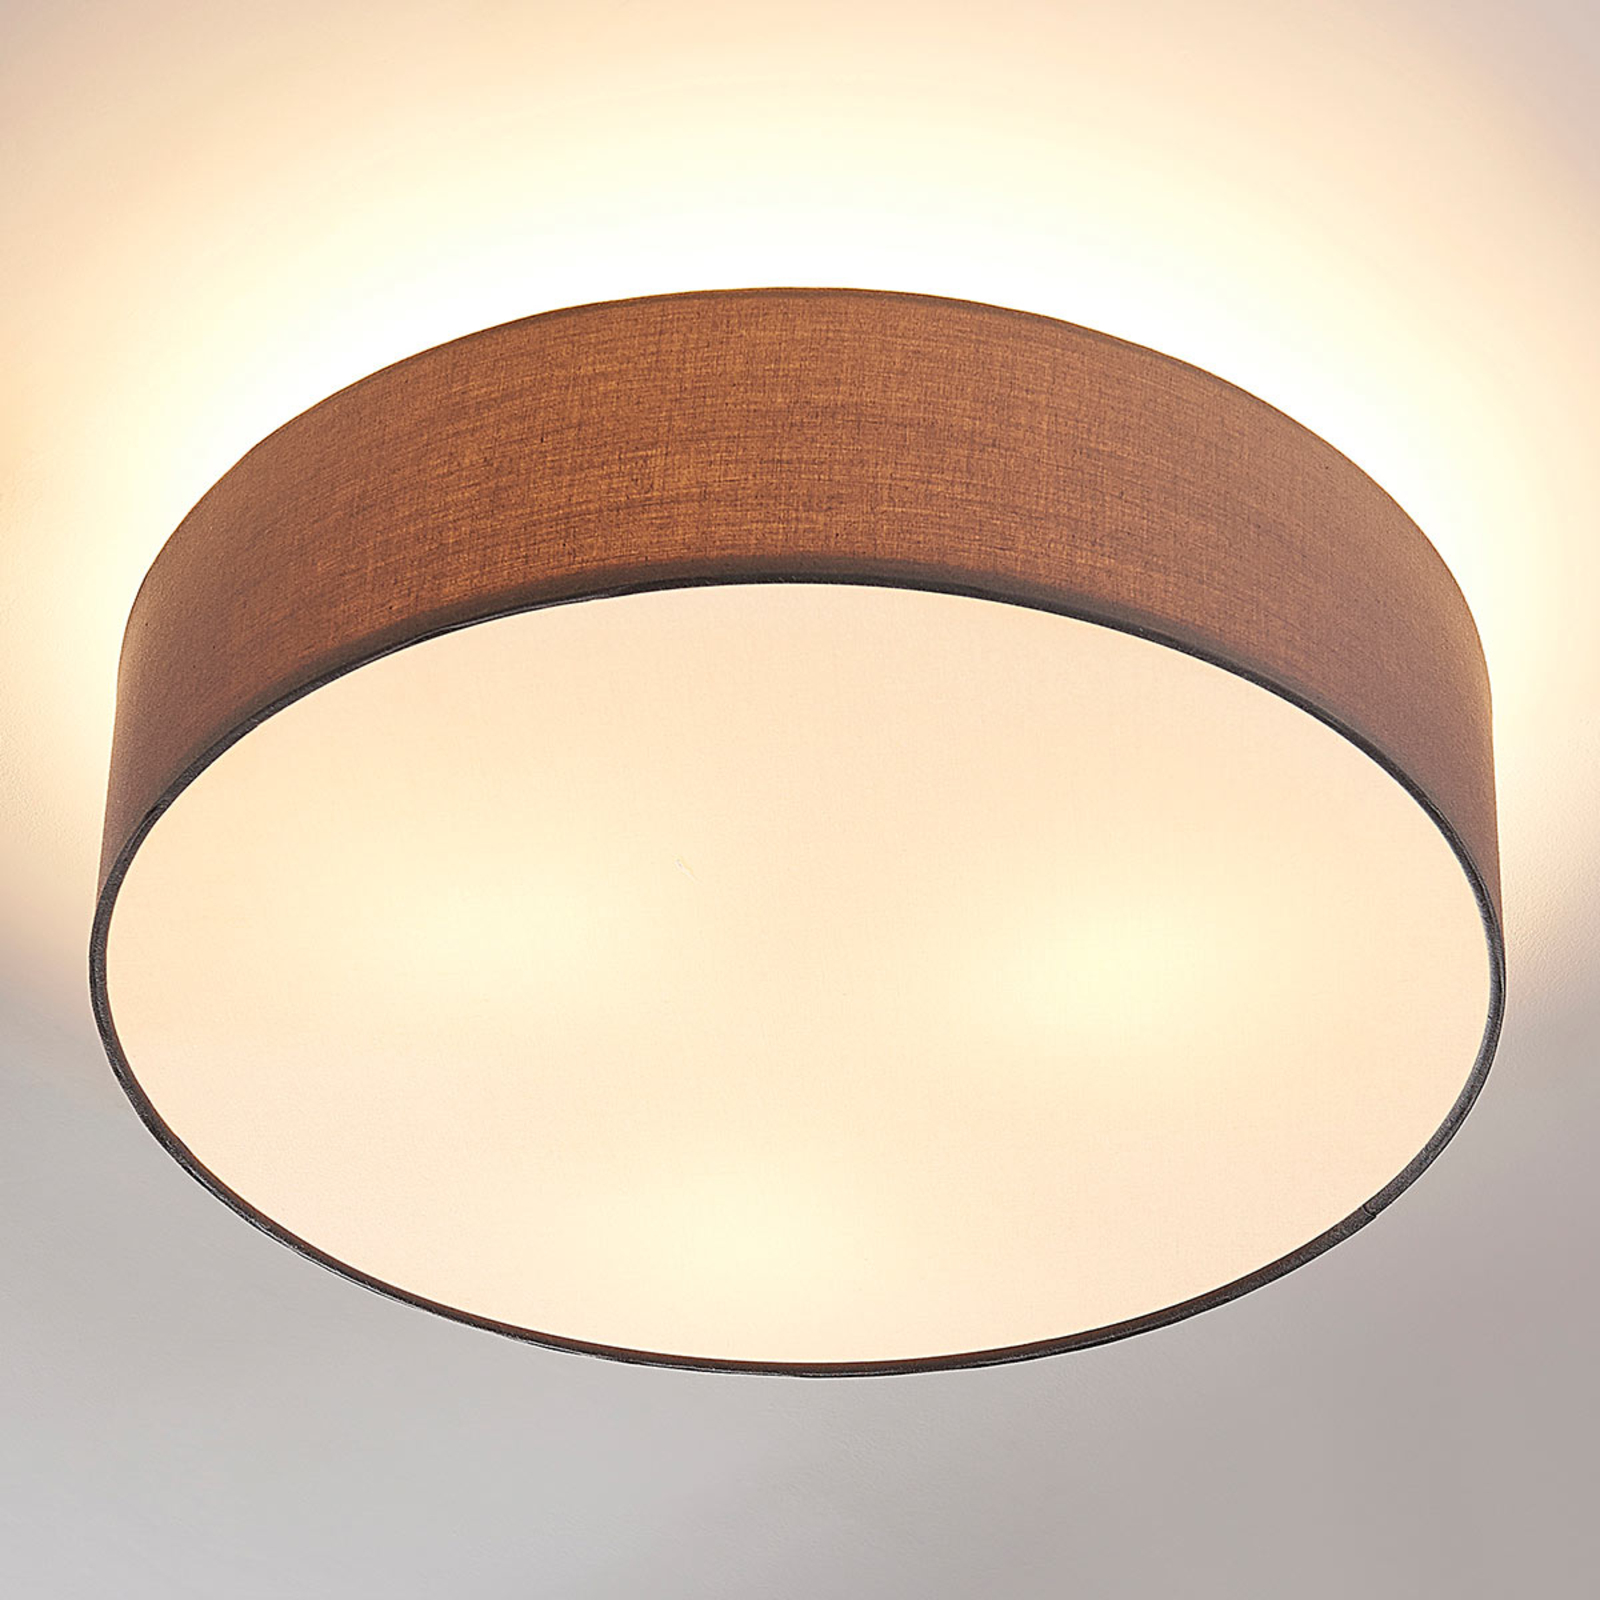 Lampa sufitowa Sebatin E27, 50 cm, szara